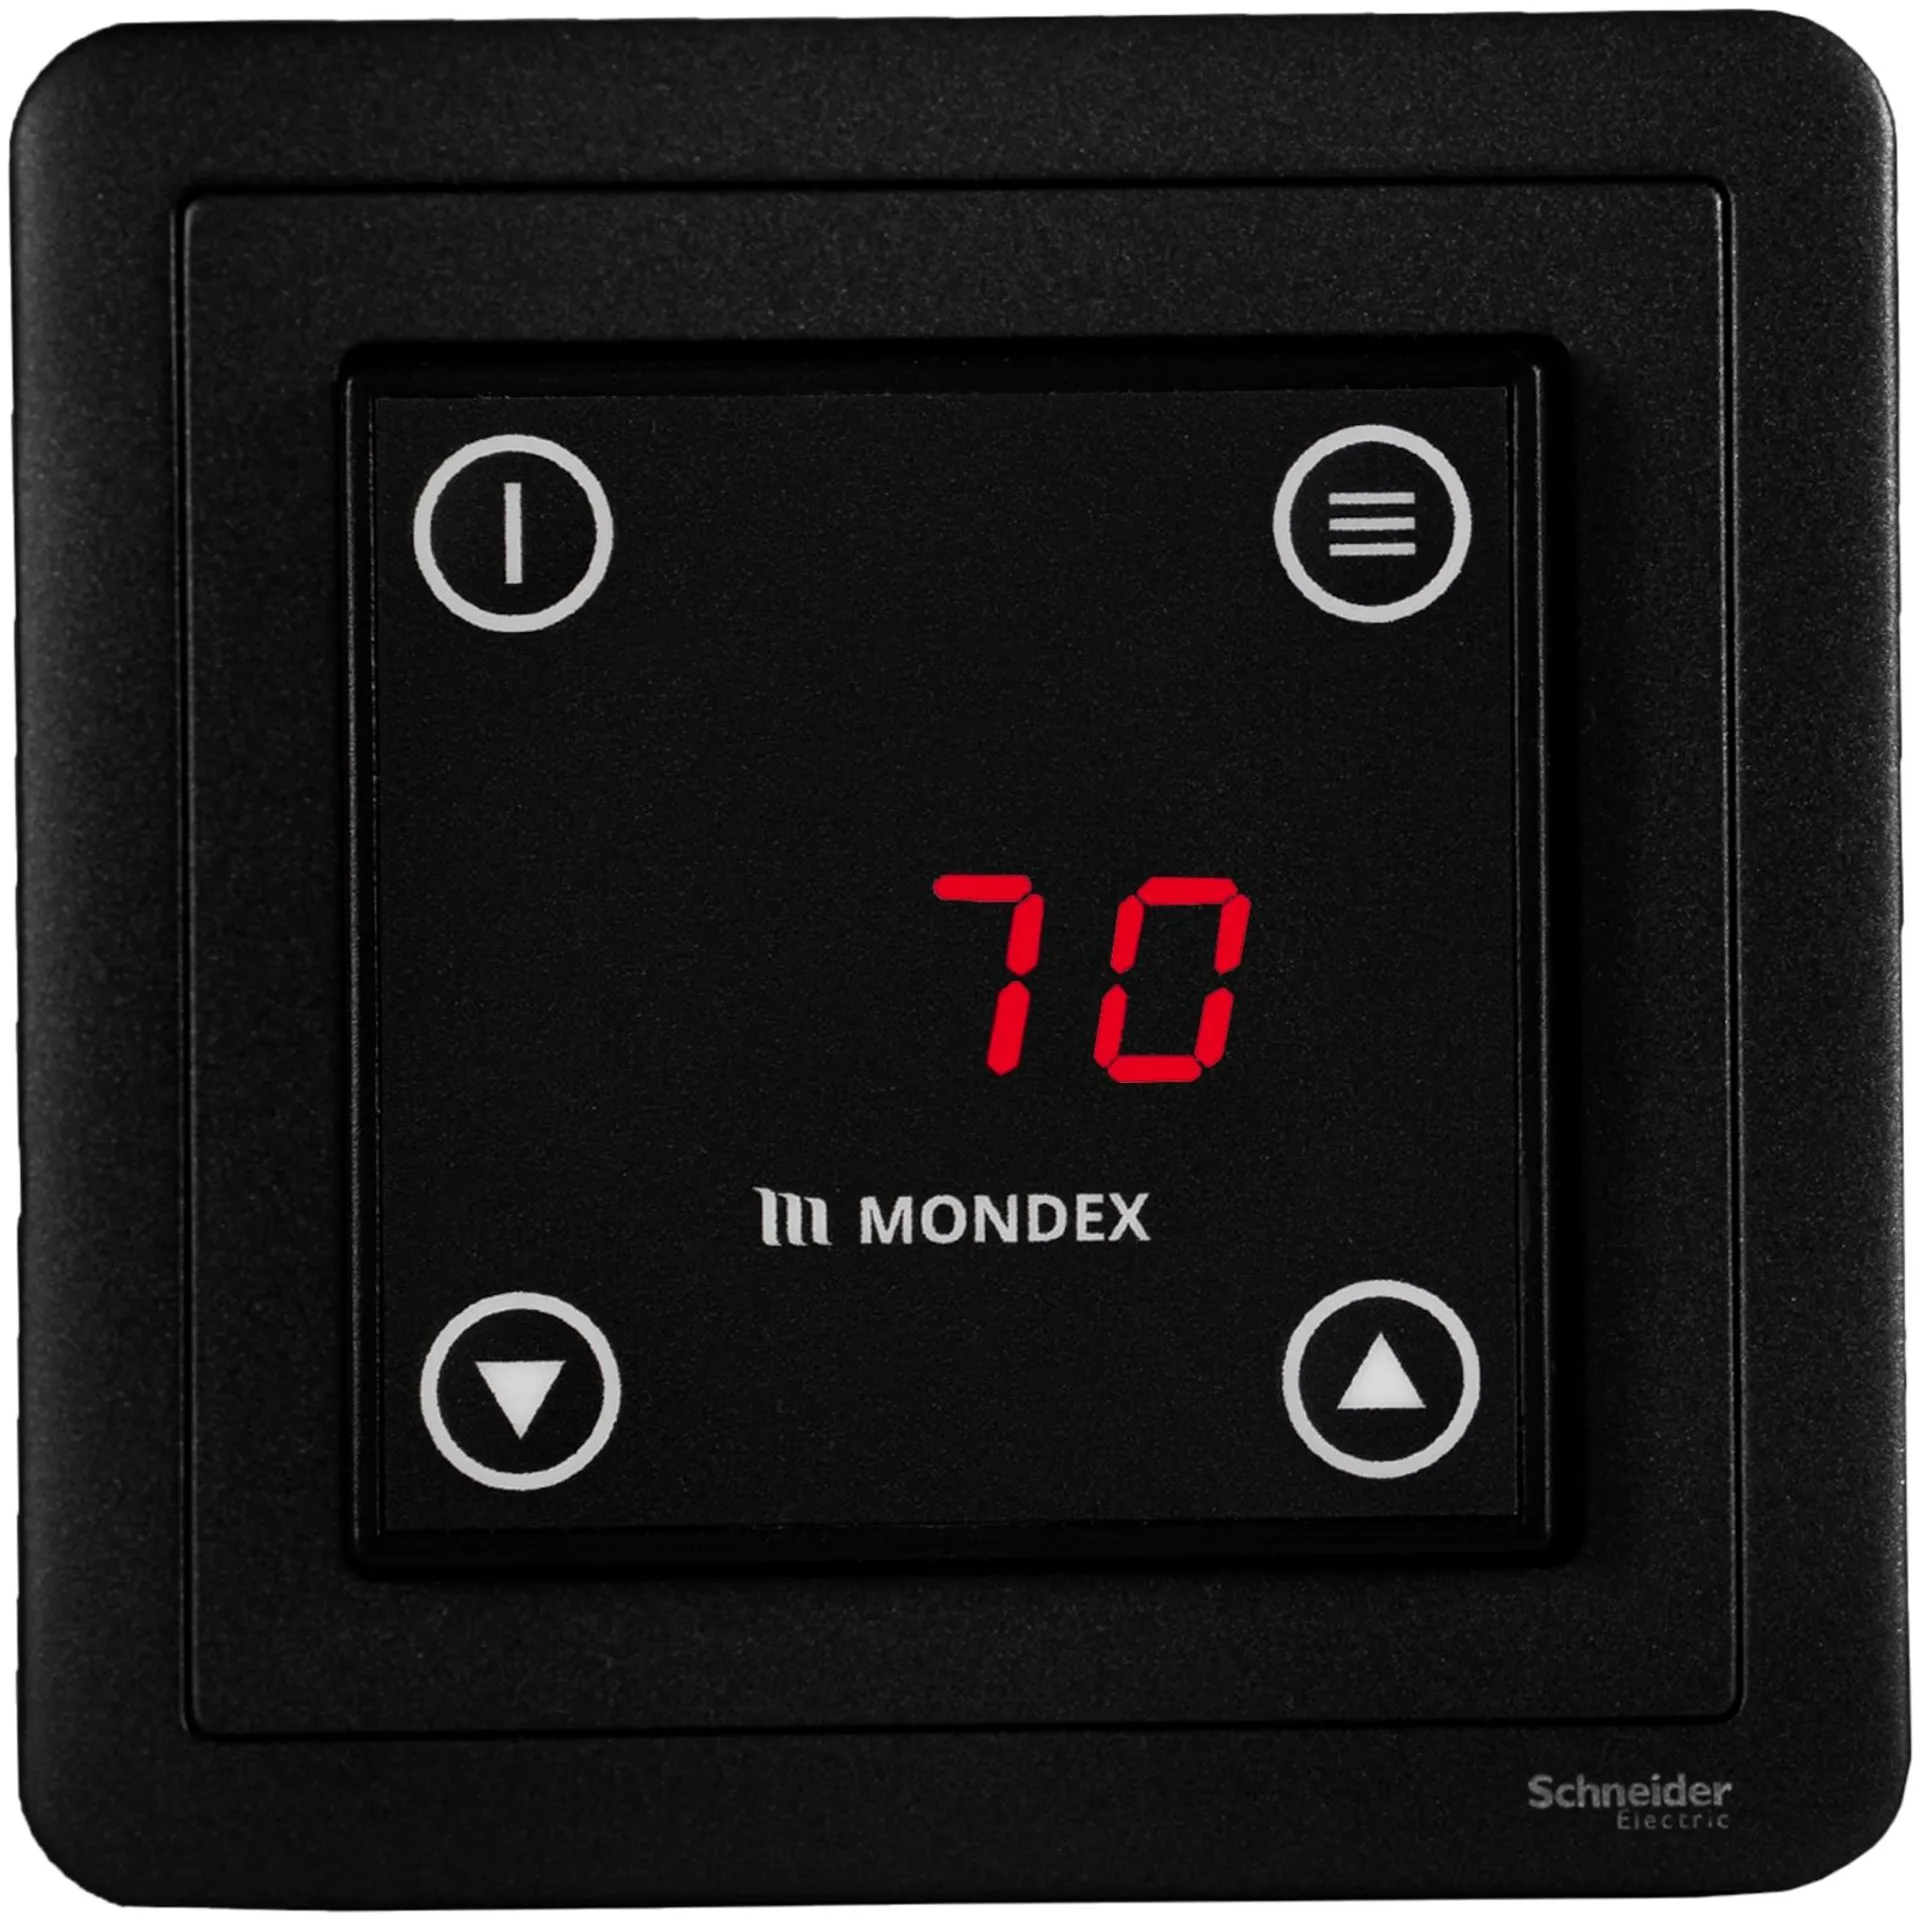 Sähkökiuas Mondex Kaira E2 6.6 KW musta - 2